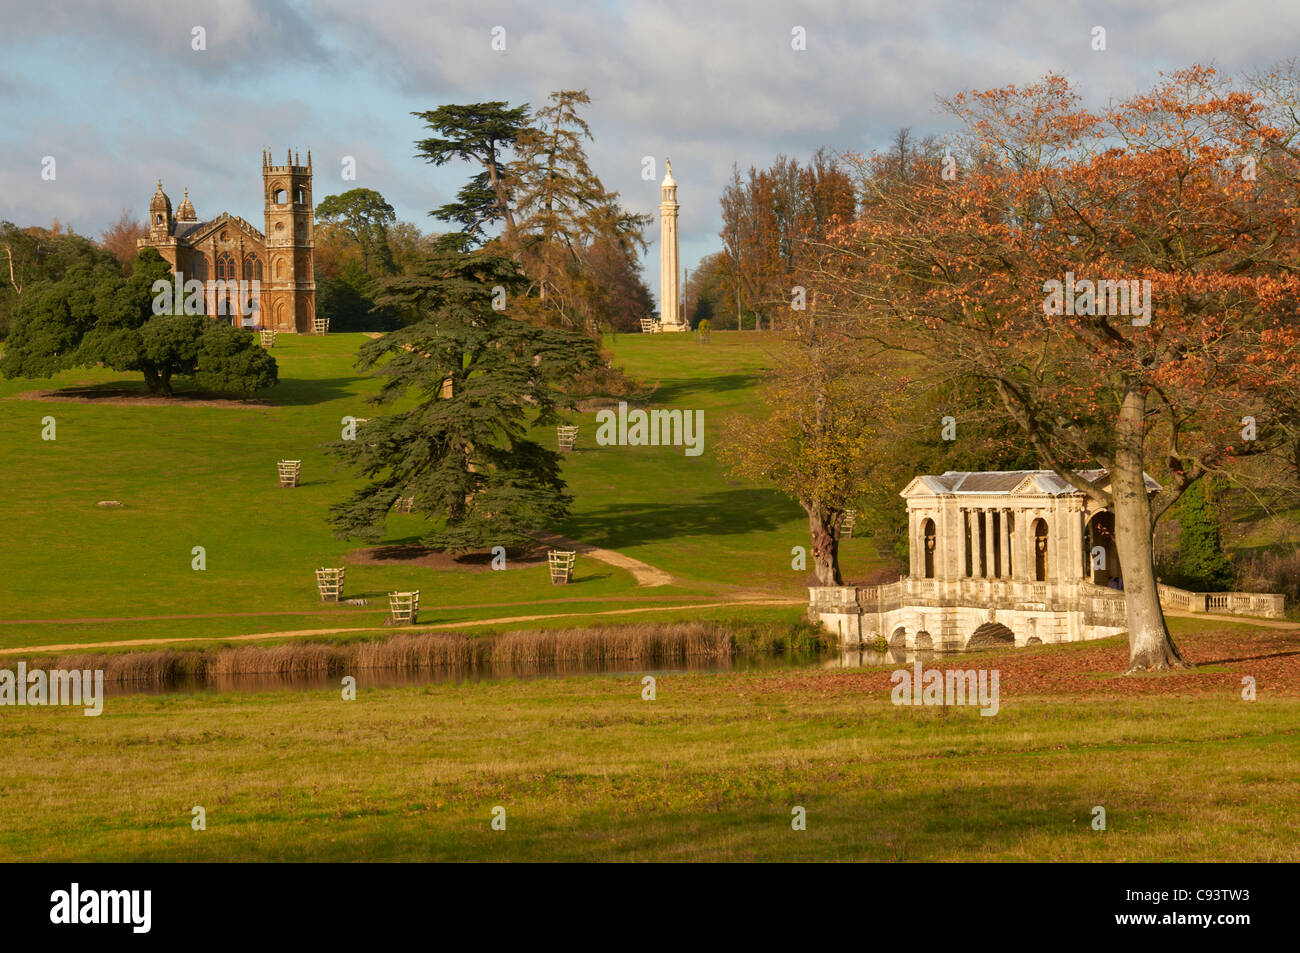 Einen alten gotischen Tempel, die Palladio-Brücke und Denkmal in Stowe-Gärten im nördlichen Buckinghamshire Stockfoto